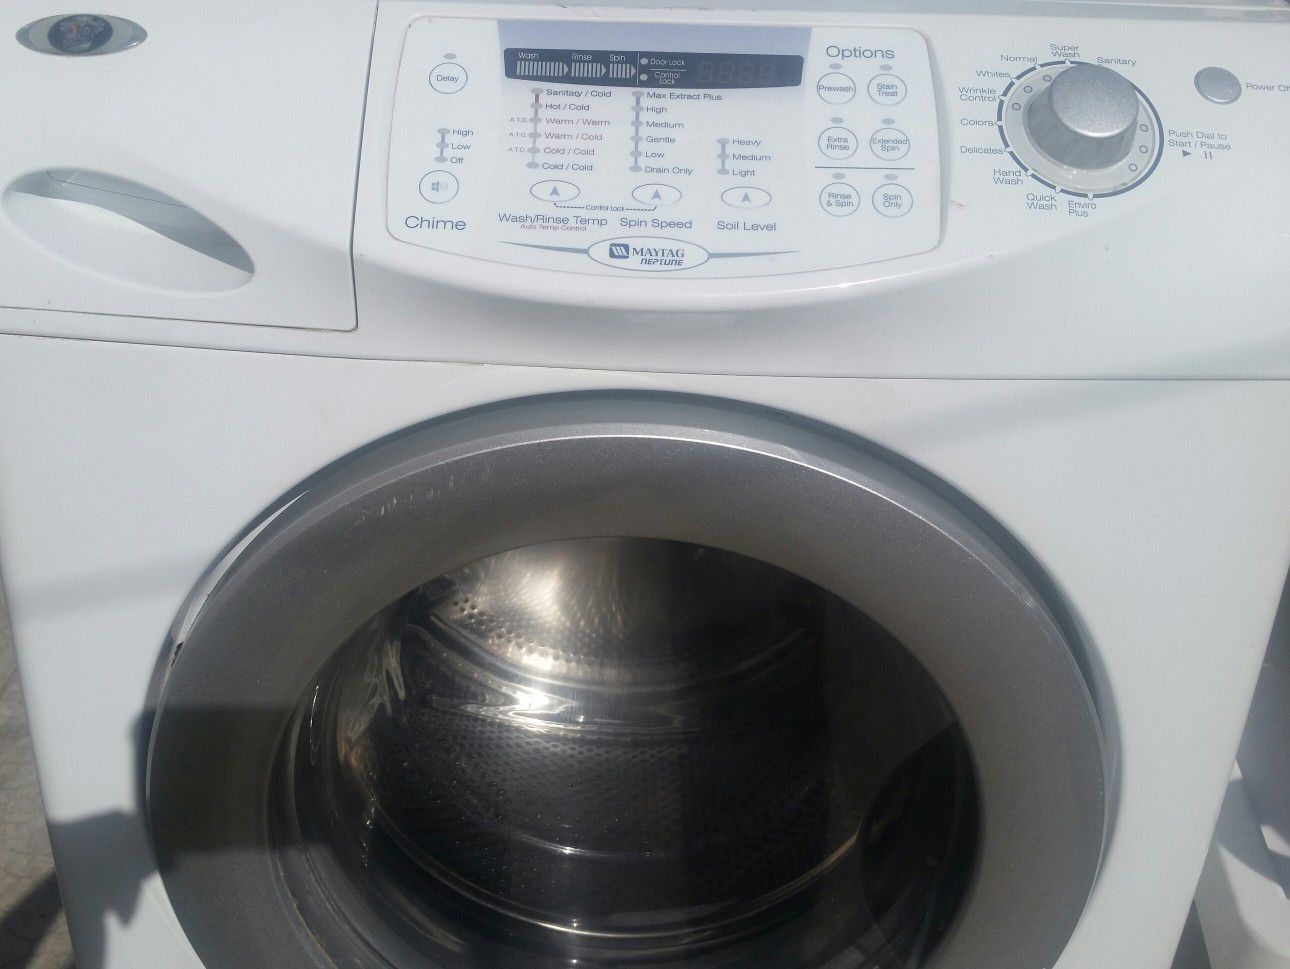 Dryer an washer $350 both Maytag.